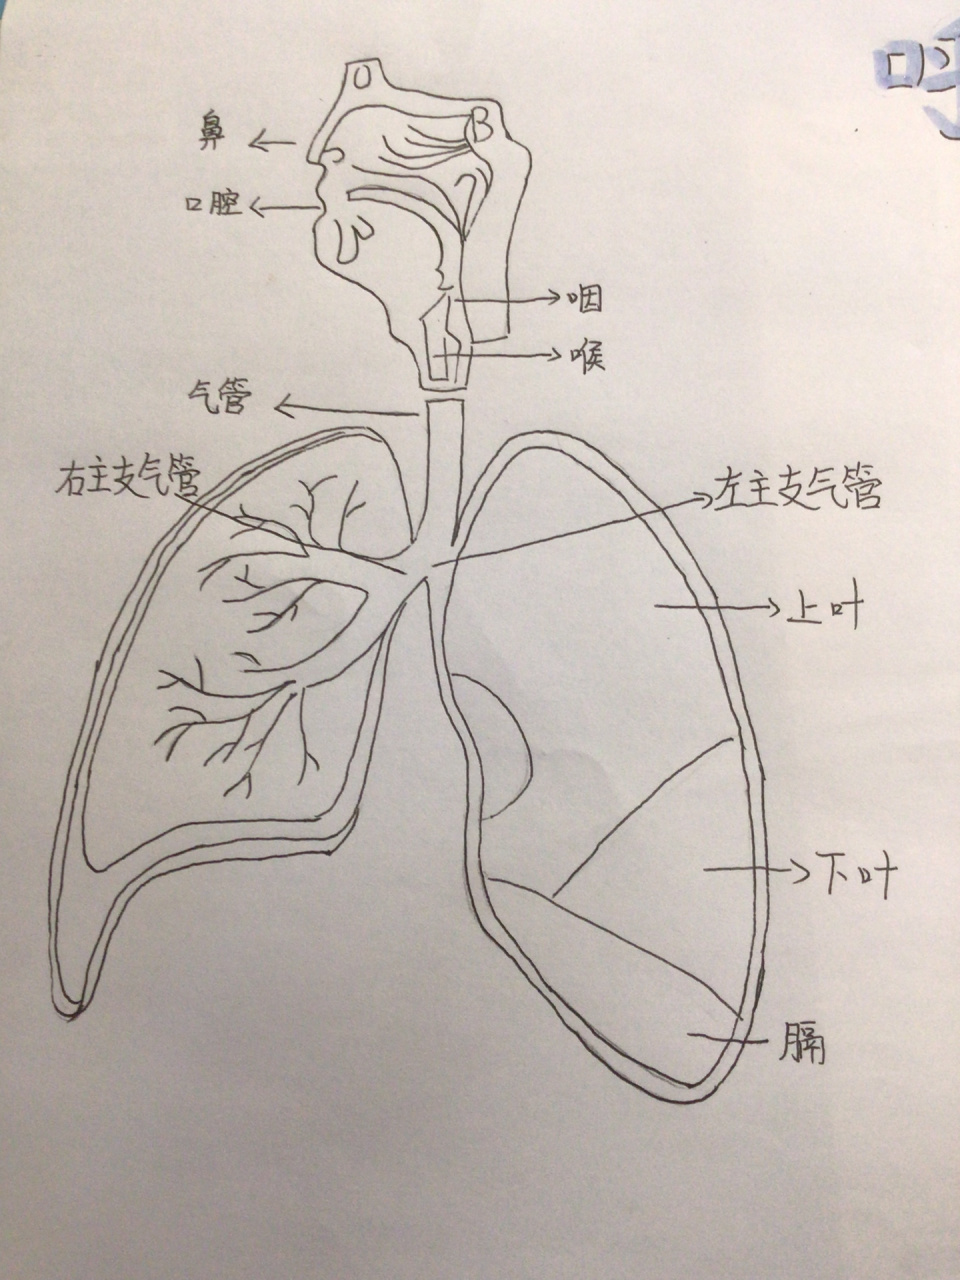 呼吸系统简笔画 卡通图片